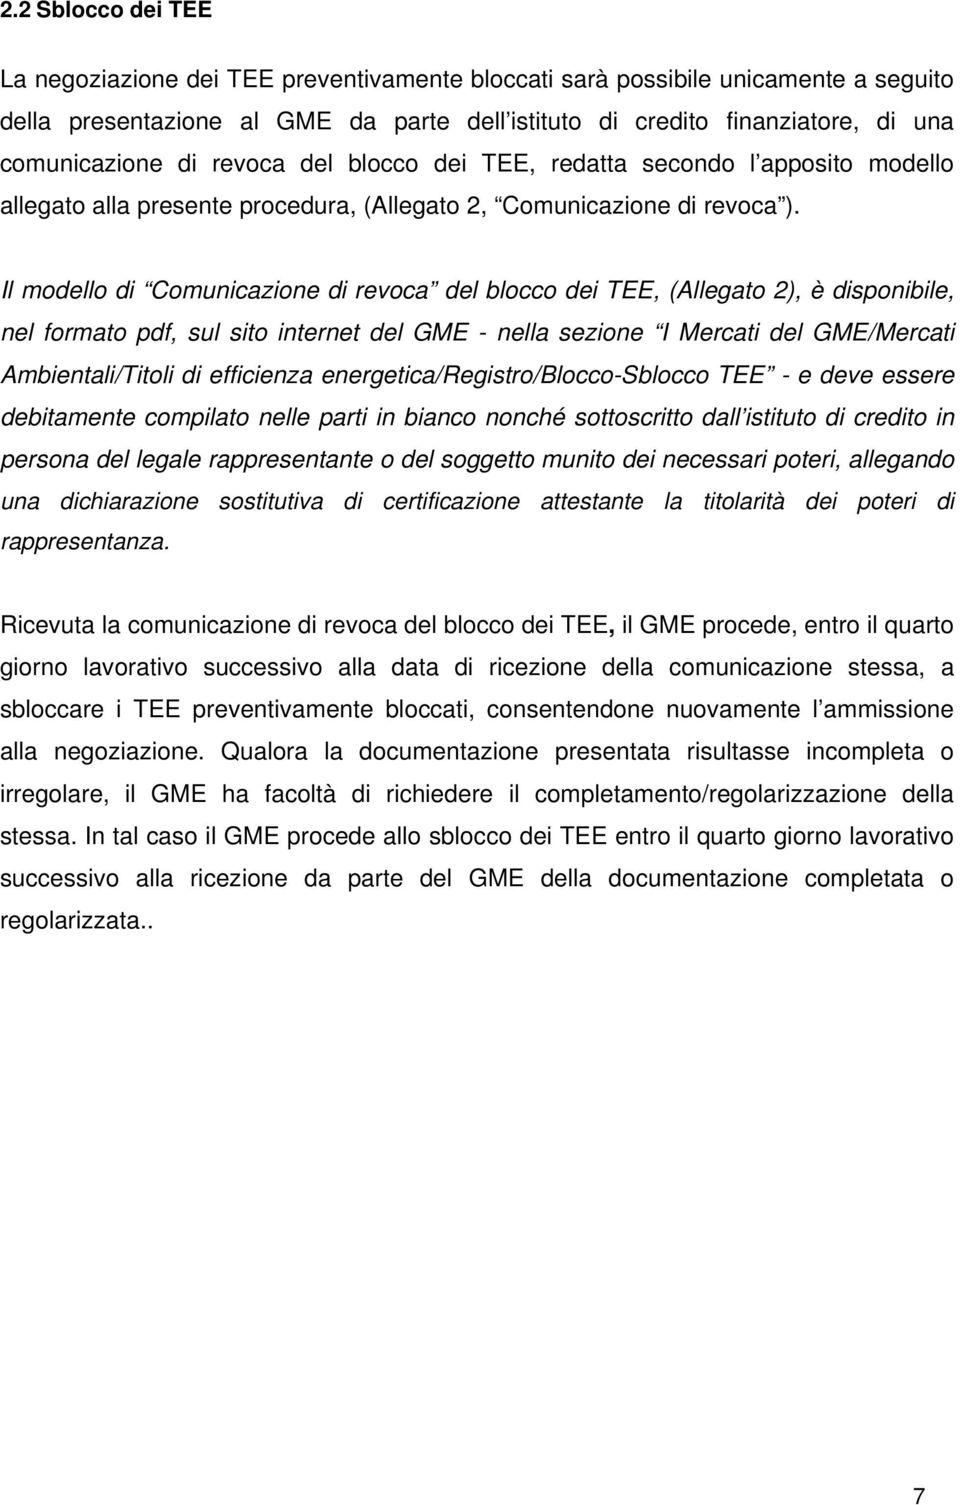 Il modello di Comunicazione di revoca del blocco dei TEE, (Allegato 2), è disponibile, nel formato pdf, sul sito internet del GME - nella sezione I Mercati del GME/Mercati Ambientali/Titoli di